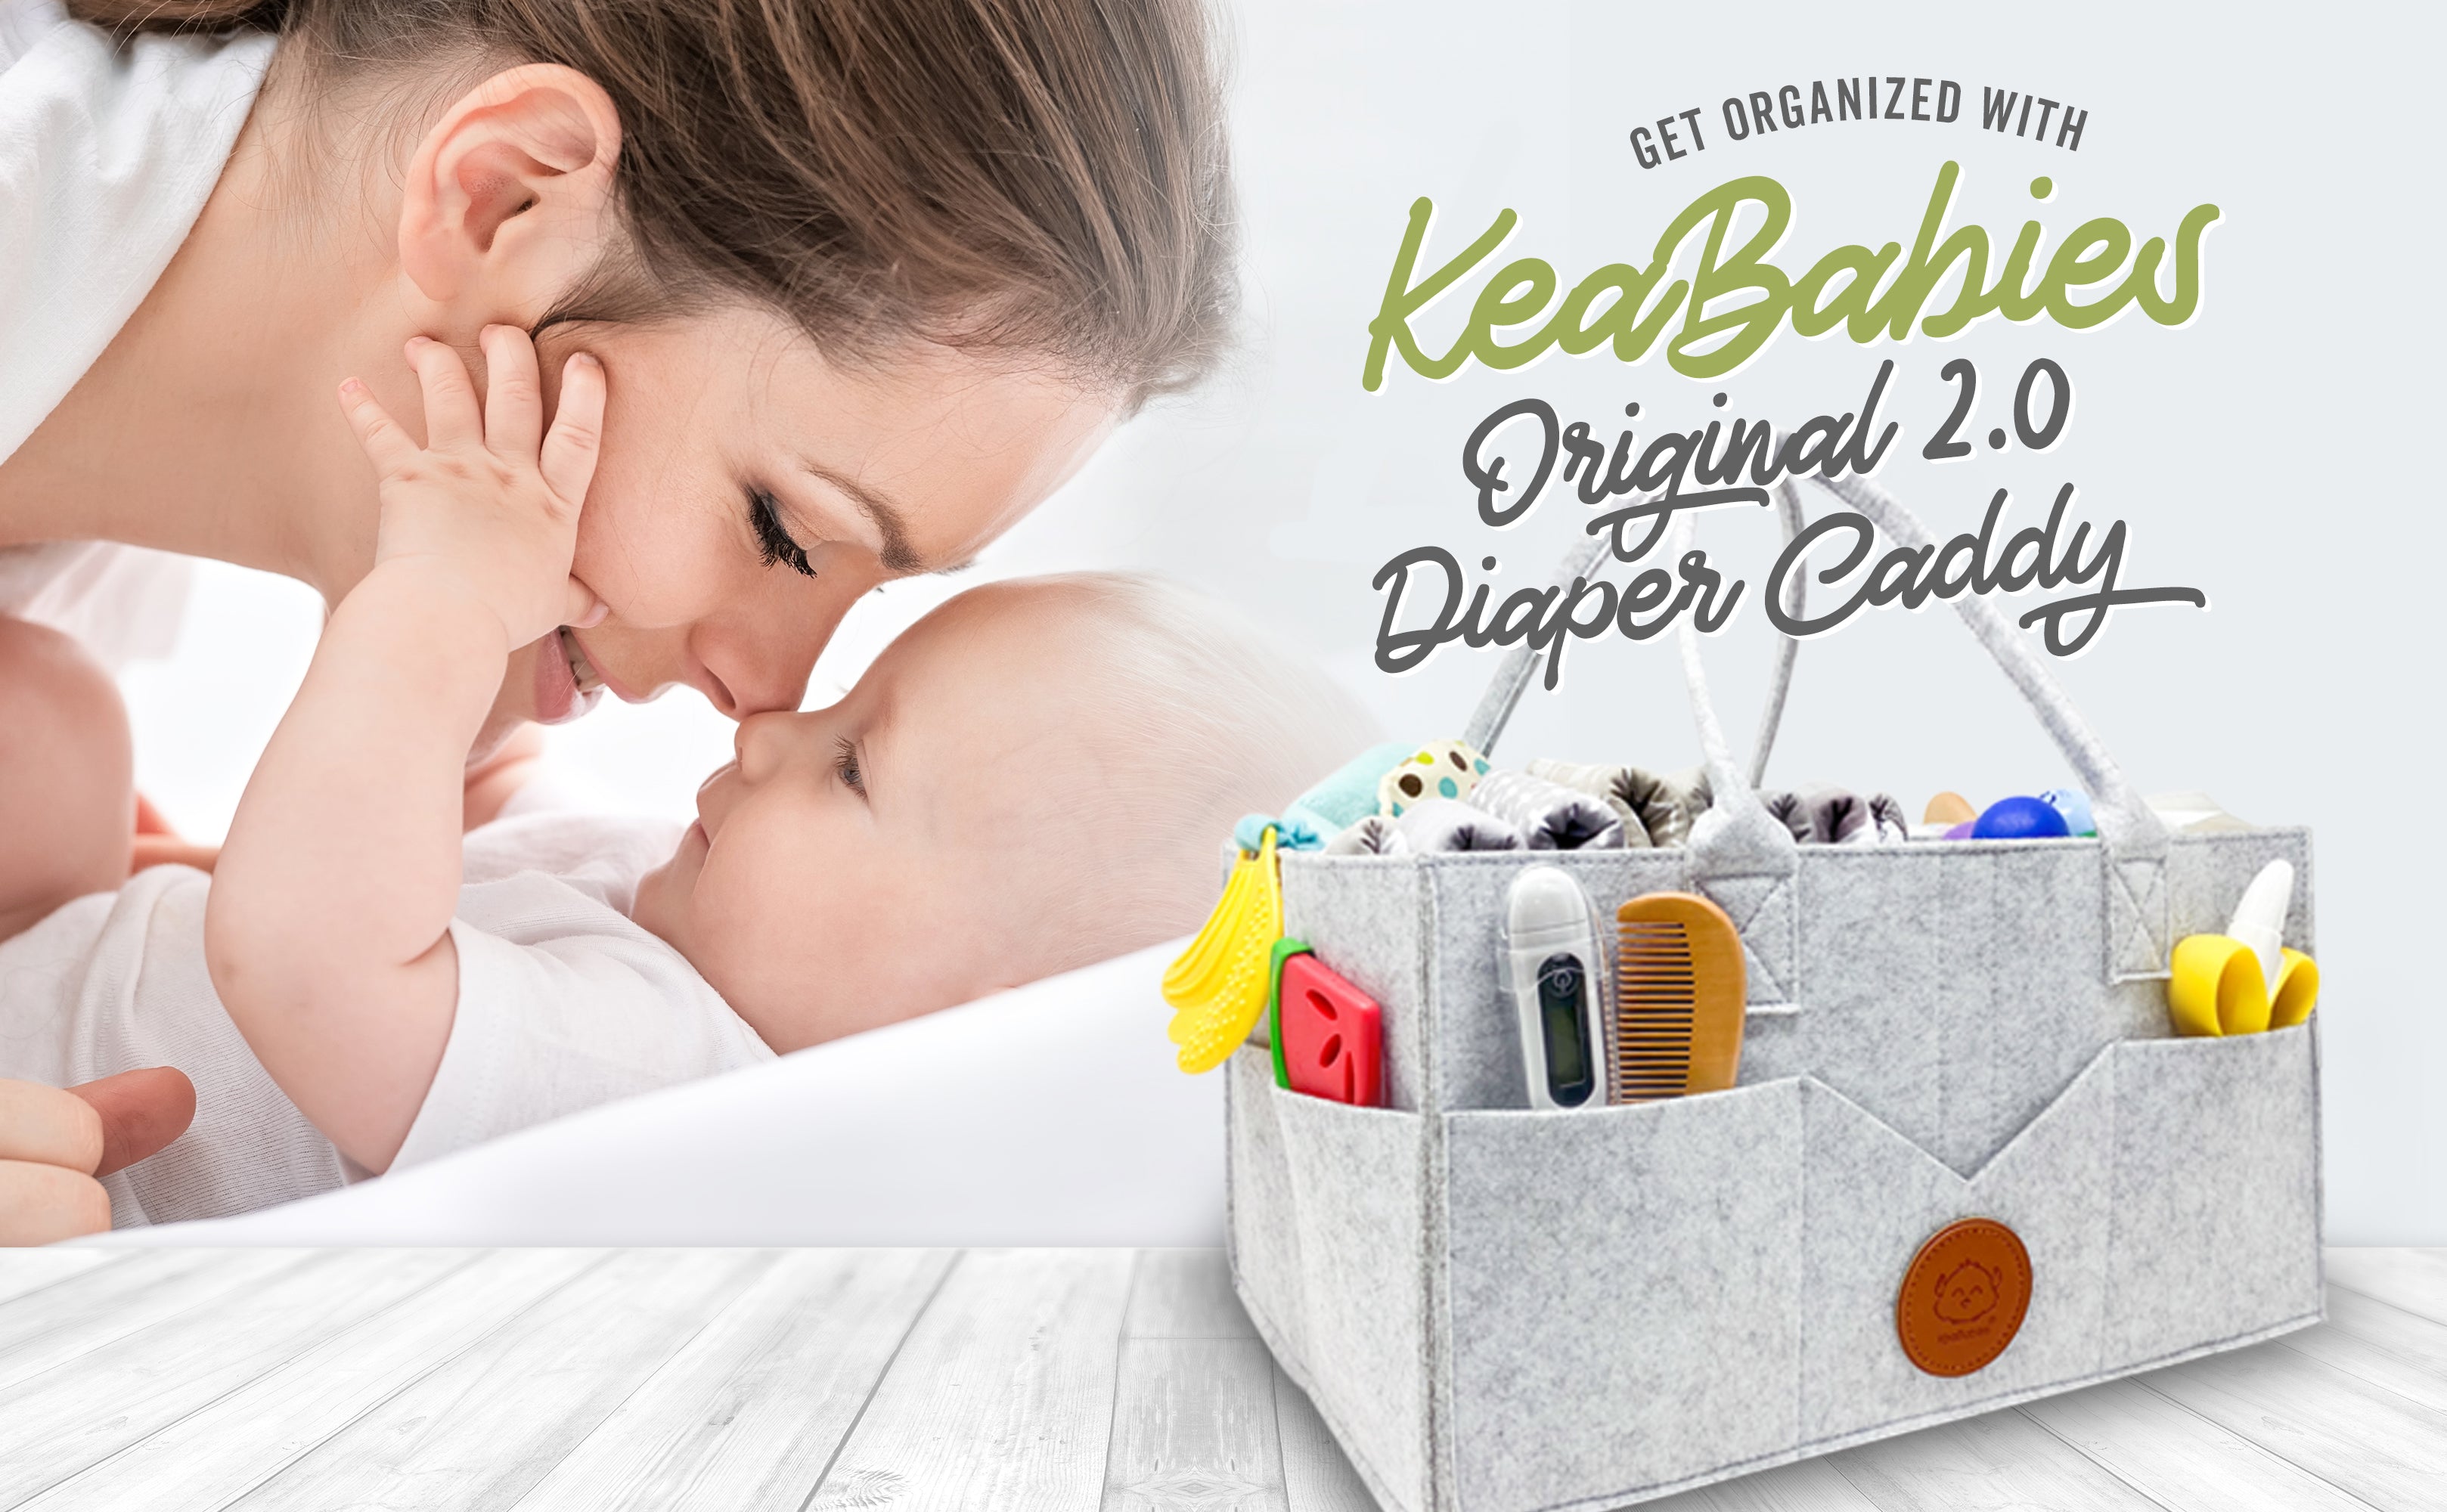 KeaBabies Original Diaper Caddy